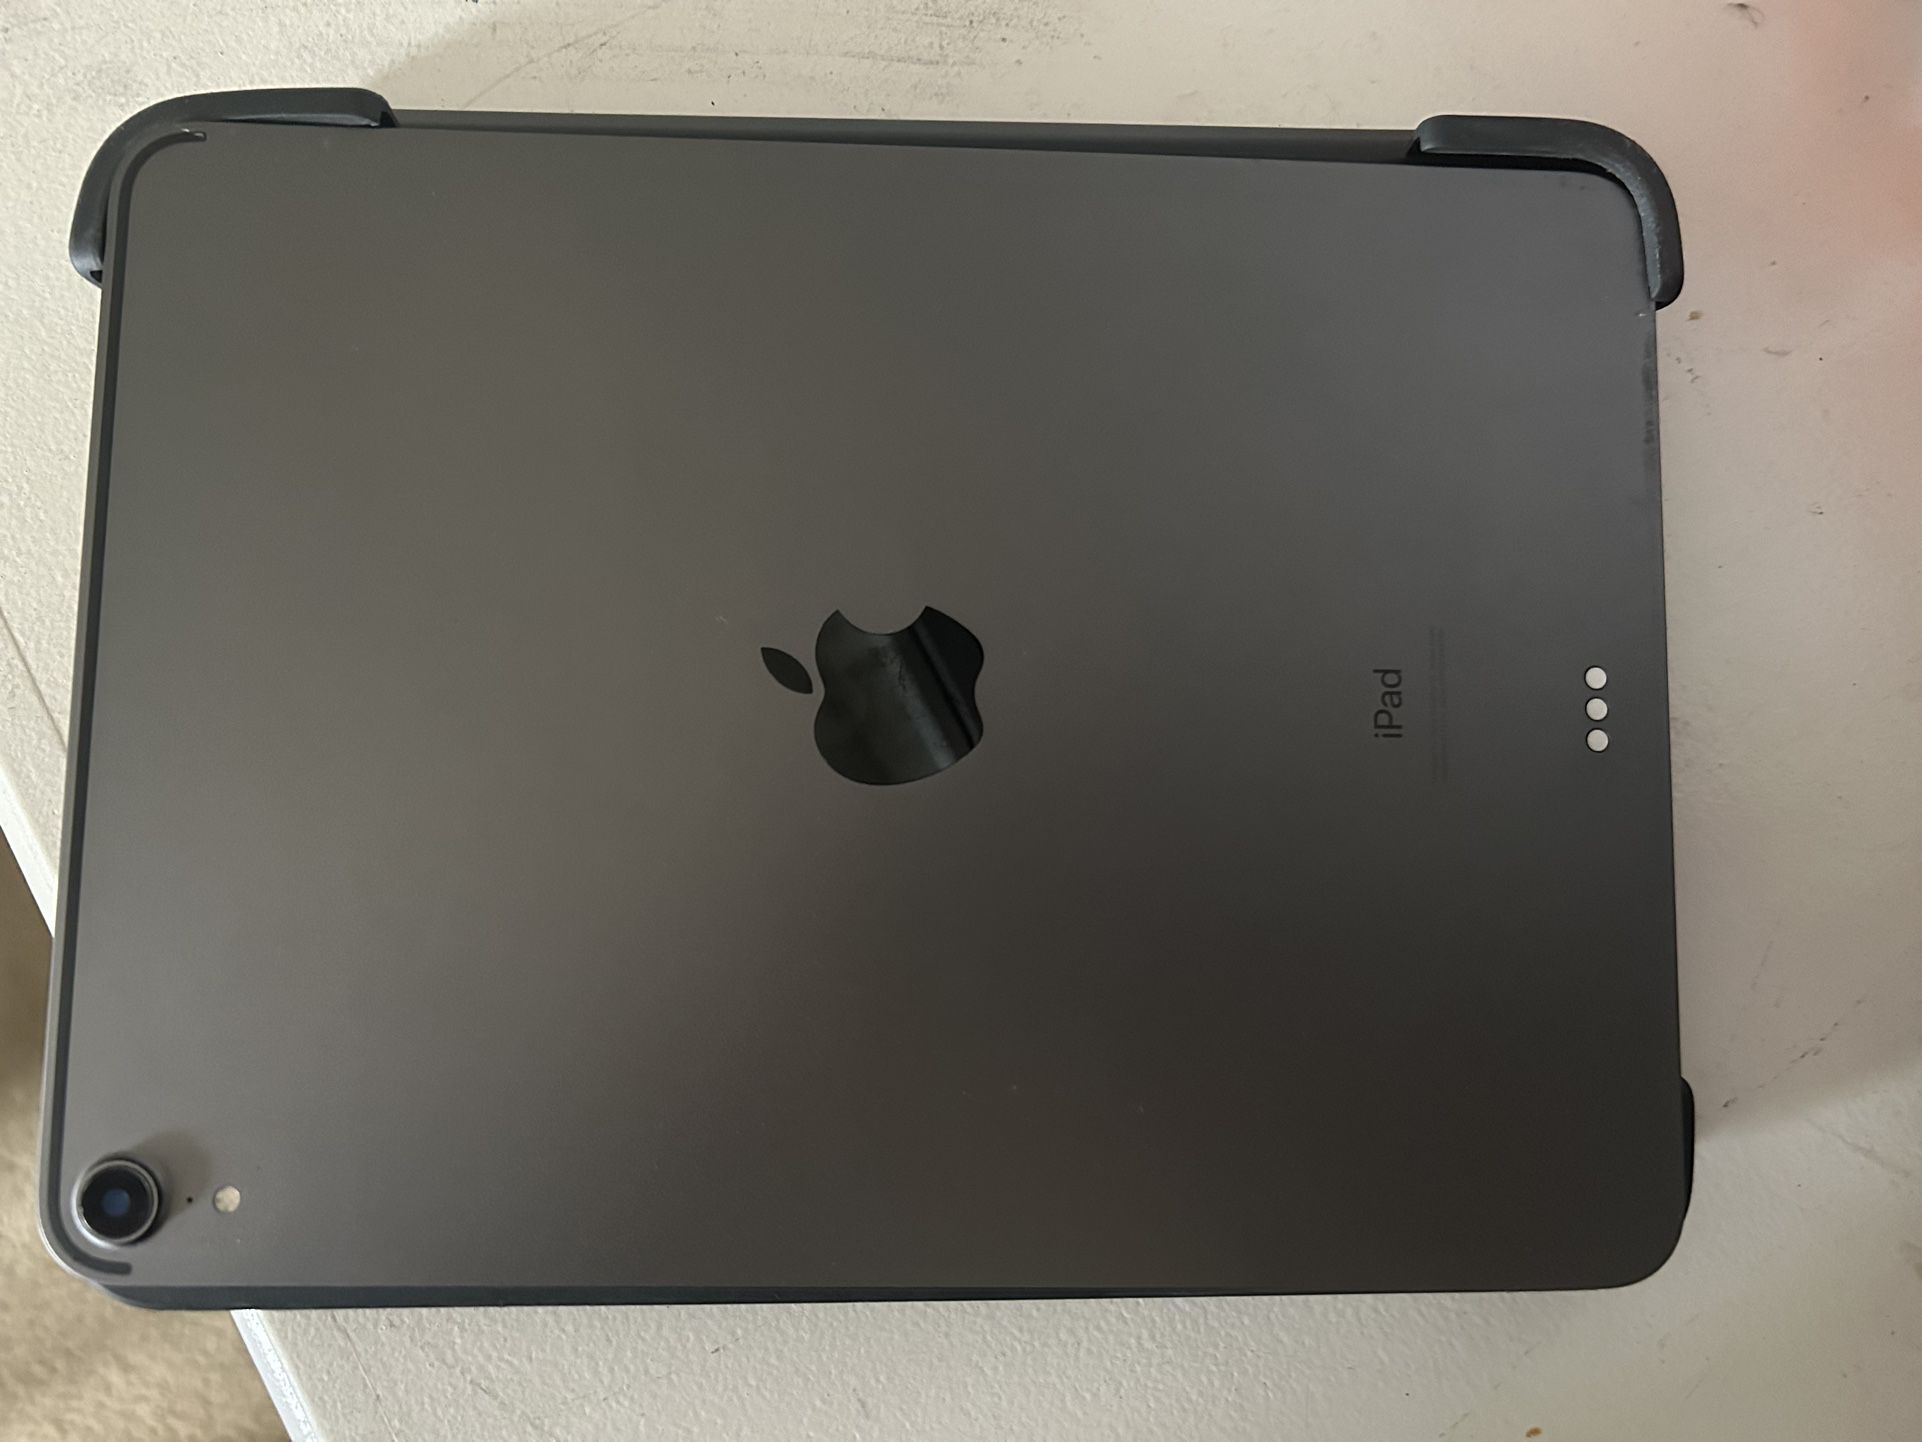 Buy 11-inch iPad Pro Wi-Fi 512GB - Space Gray - Apple